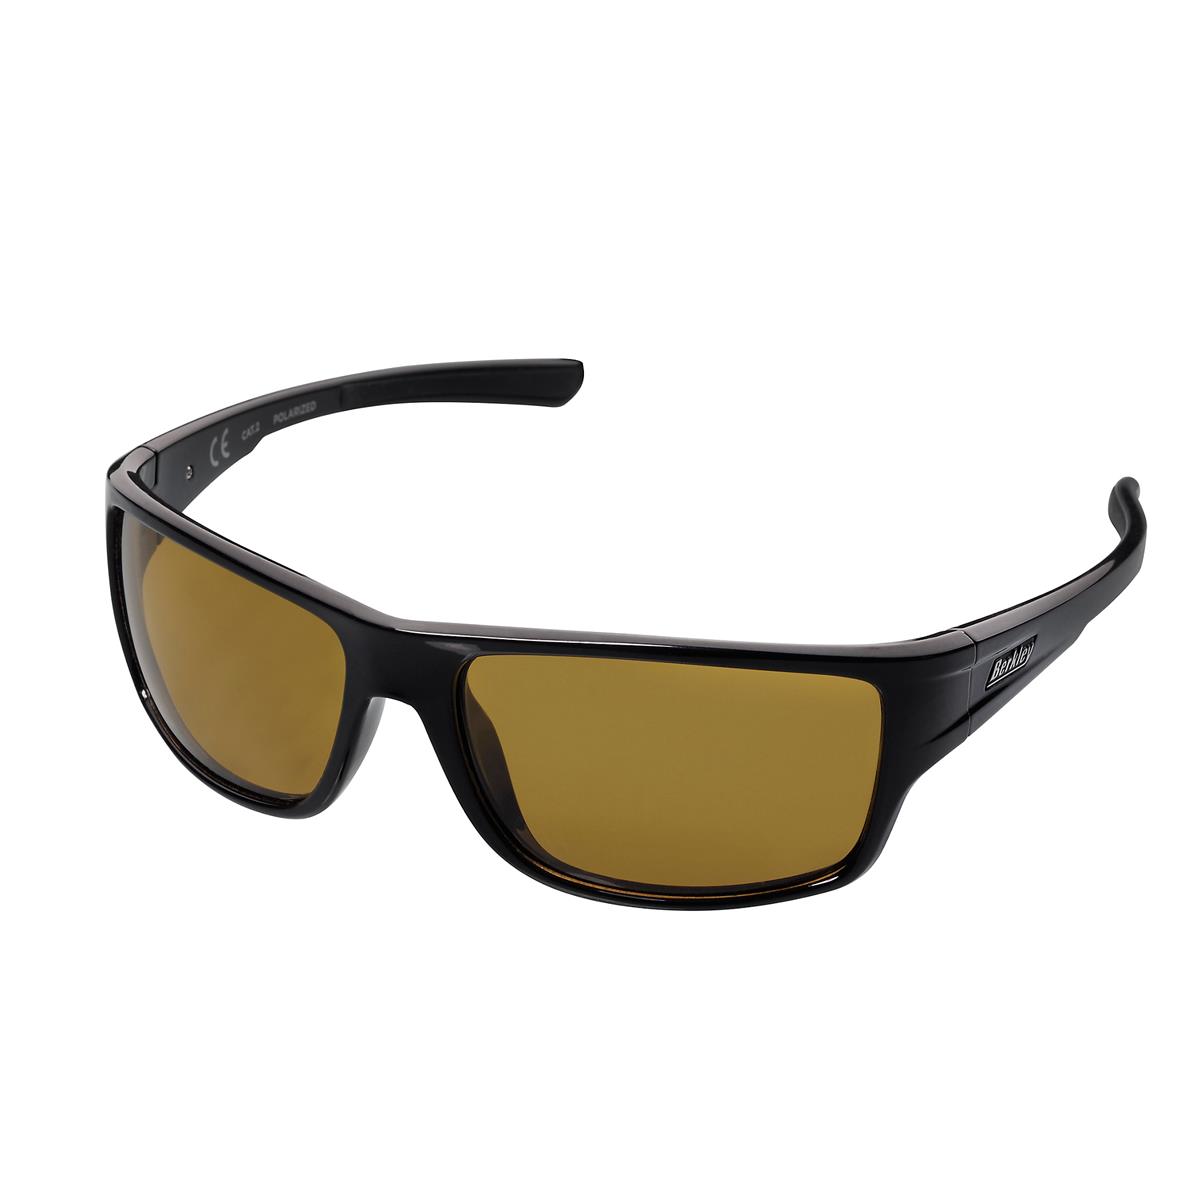 Berkley B11 Sunglasses; Black / Yellow